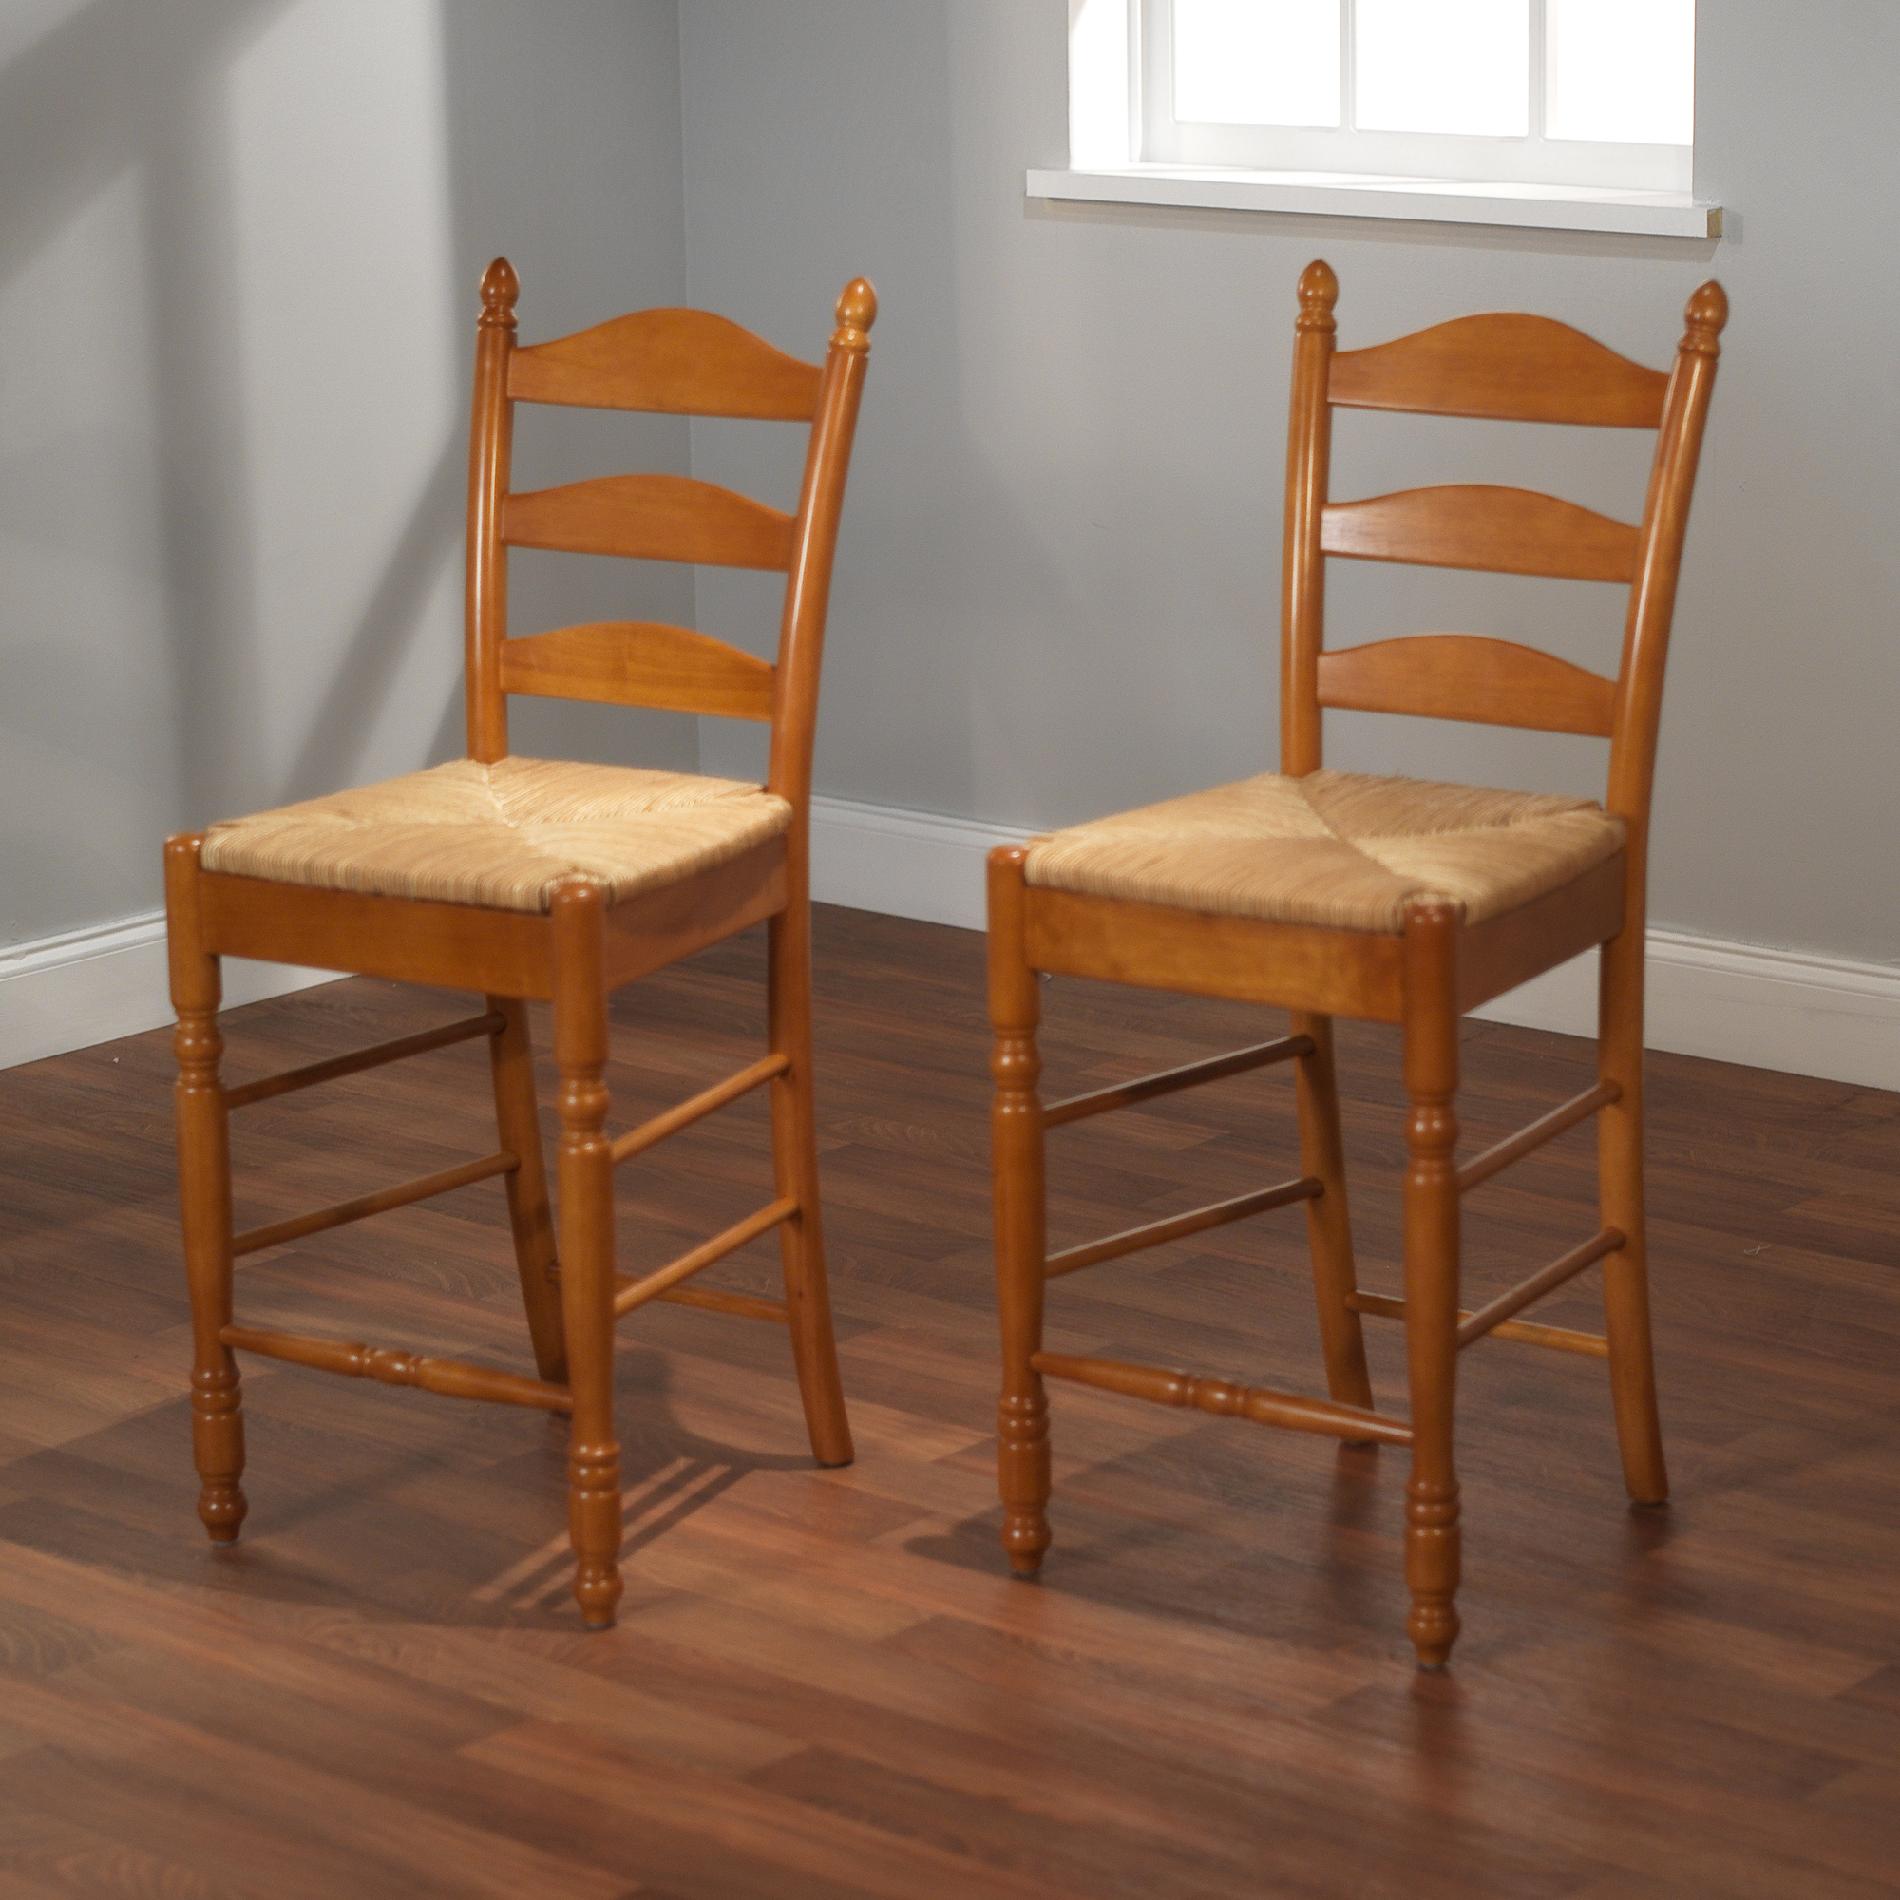 2pc set of Ladderback stools in oak 24"